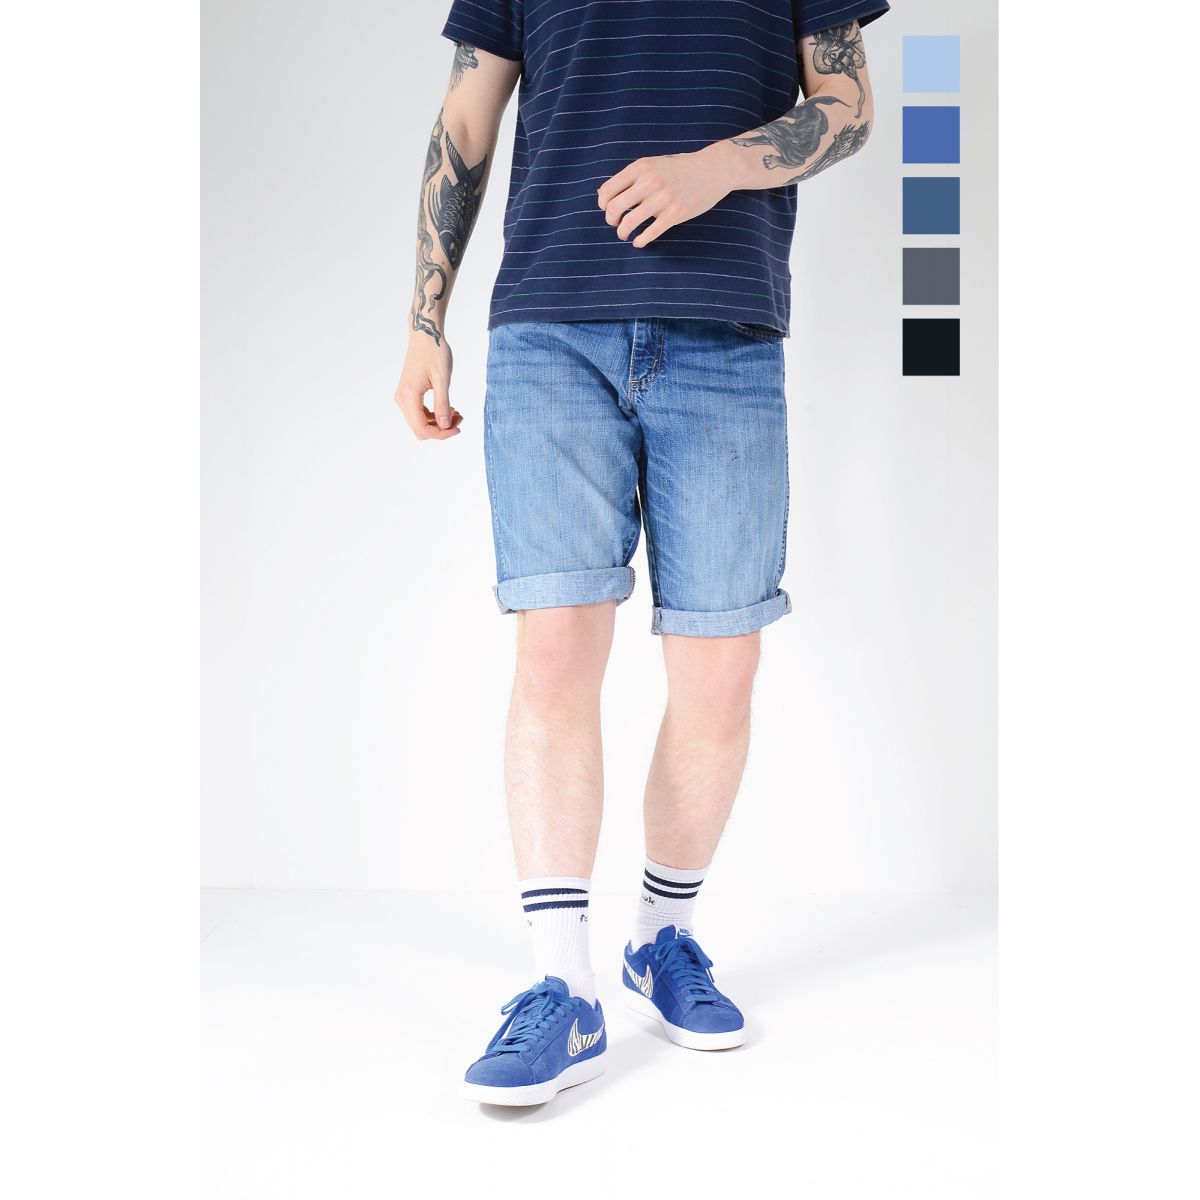 Eddie Bauer Mens Size 33 Beige Flat Front Denim Shorts Jorts | eBay